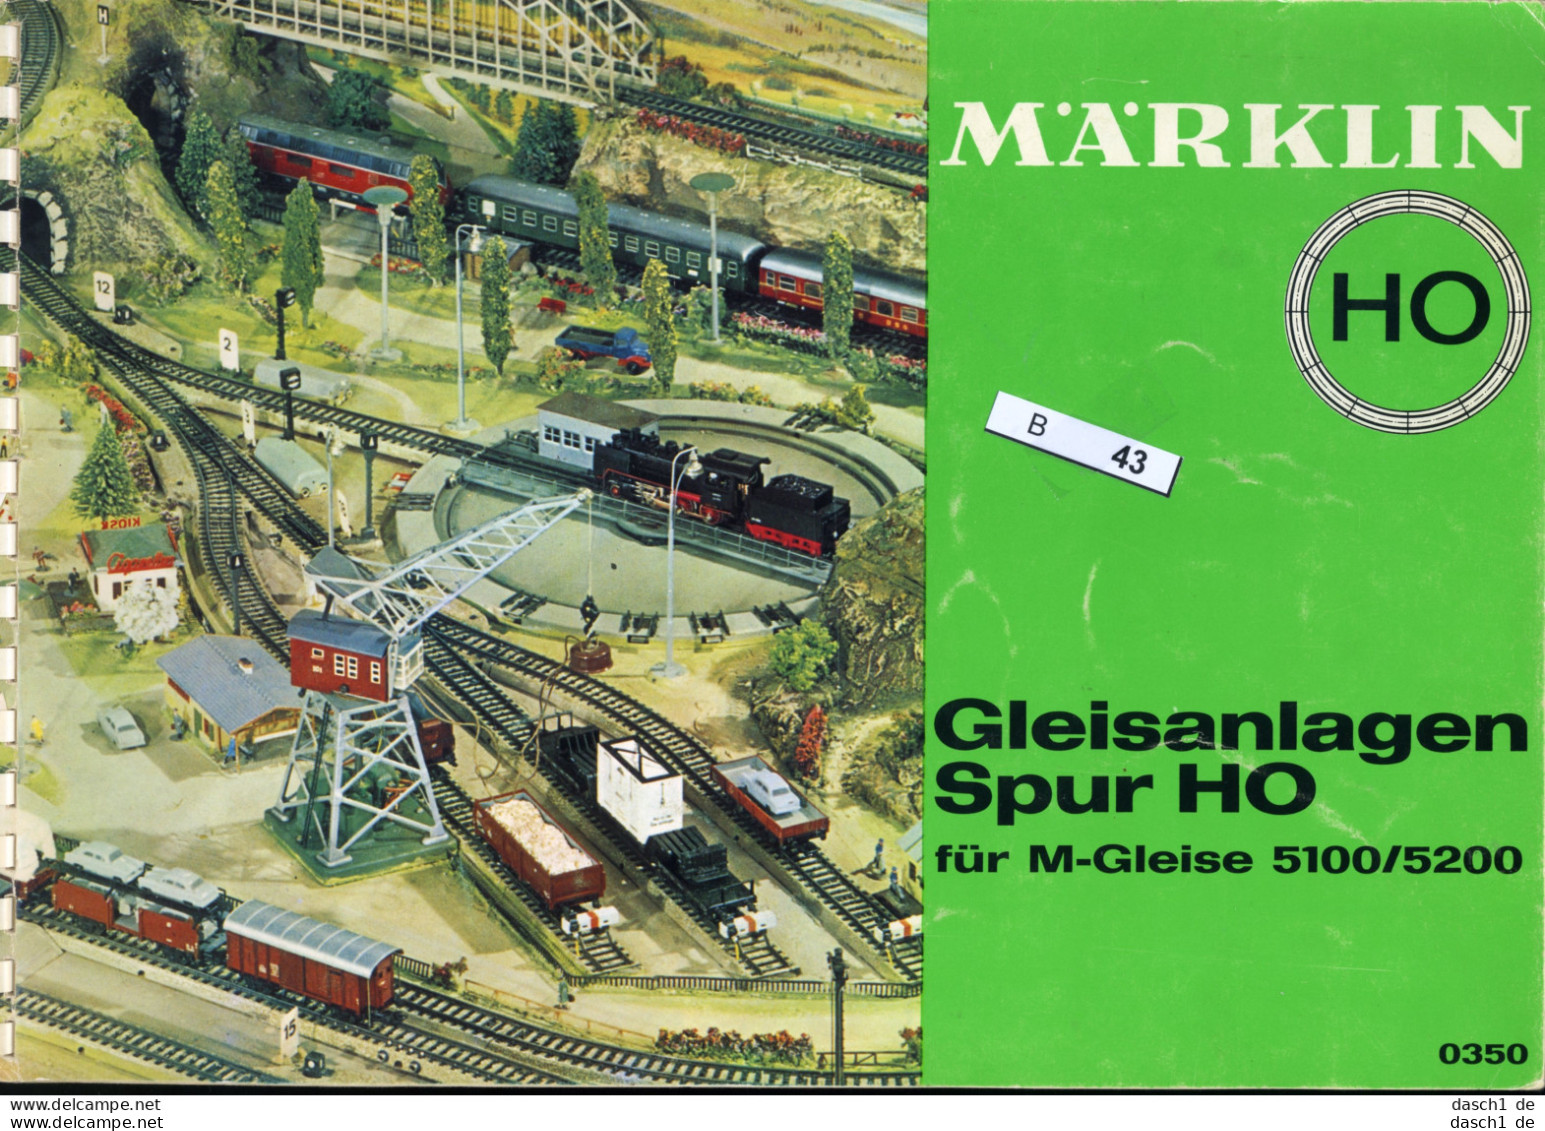 Märklin Gleisanlagen Spur H0, B-043 - Juegos & Miniaturas